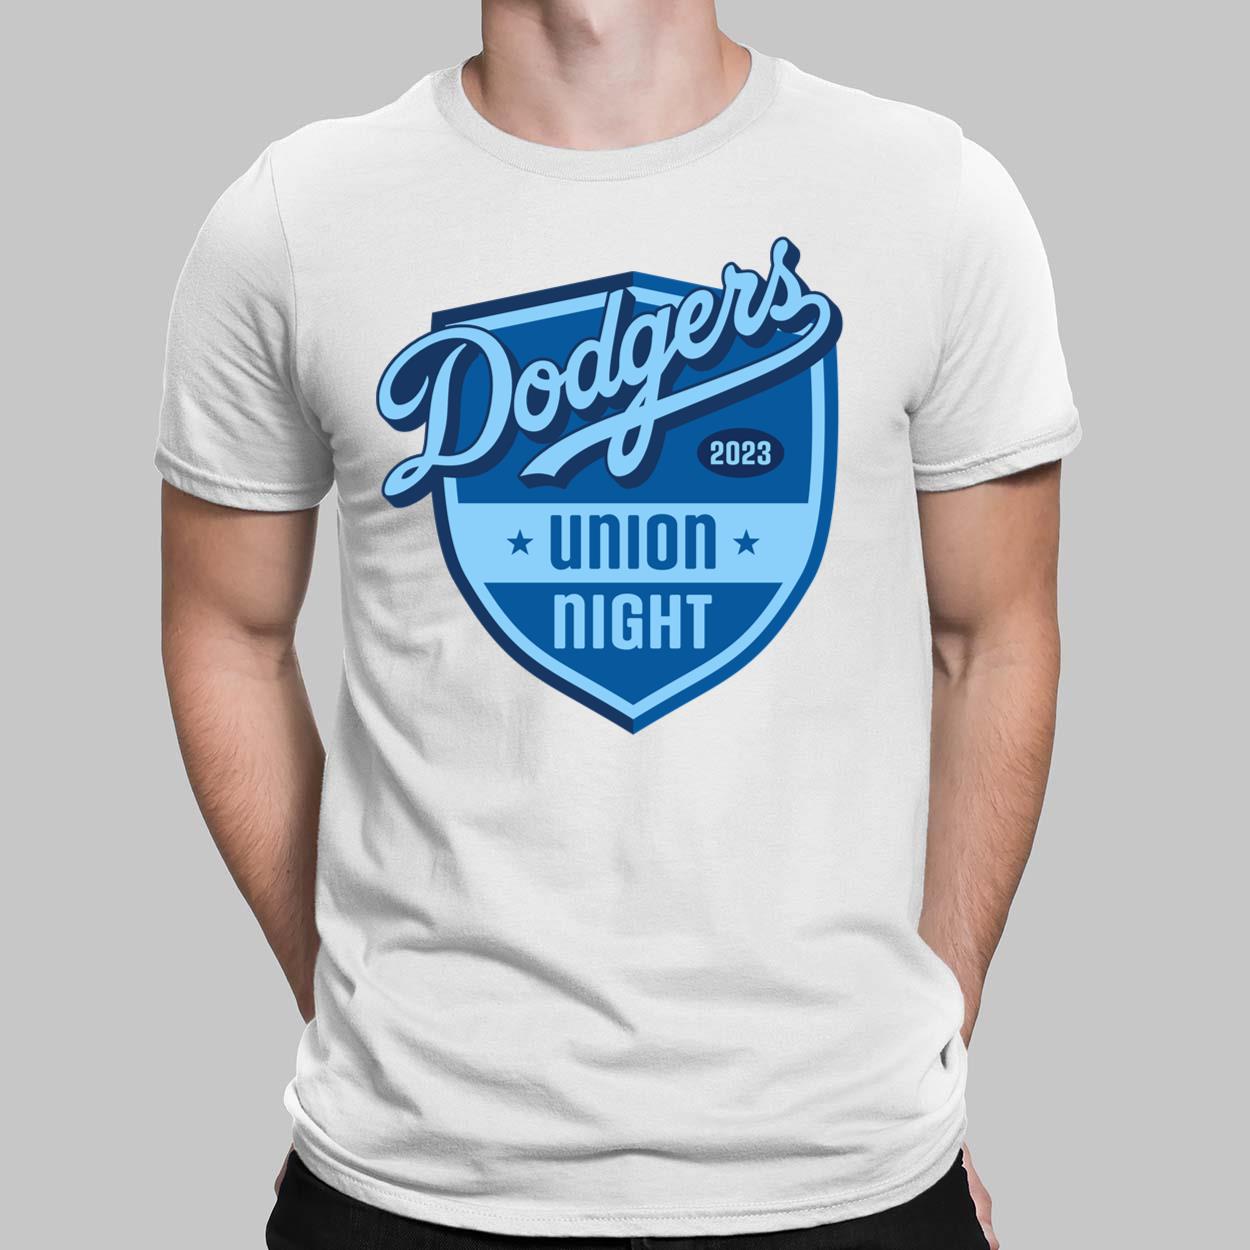 Design Los Angeles Dodgers Pride 2023 T-Shirt, hoodie, sweater